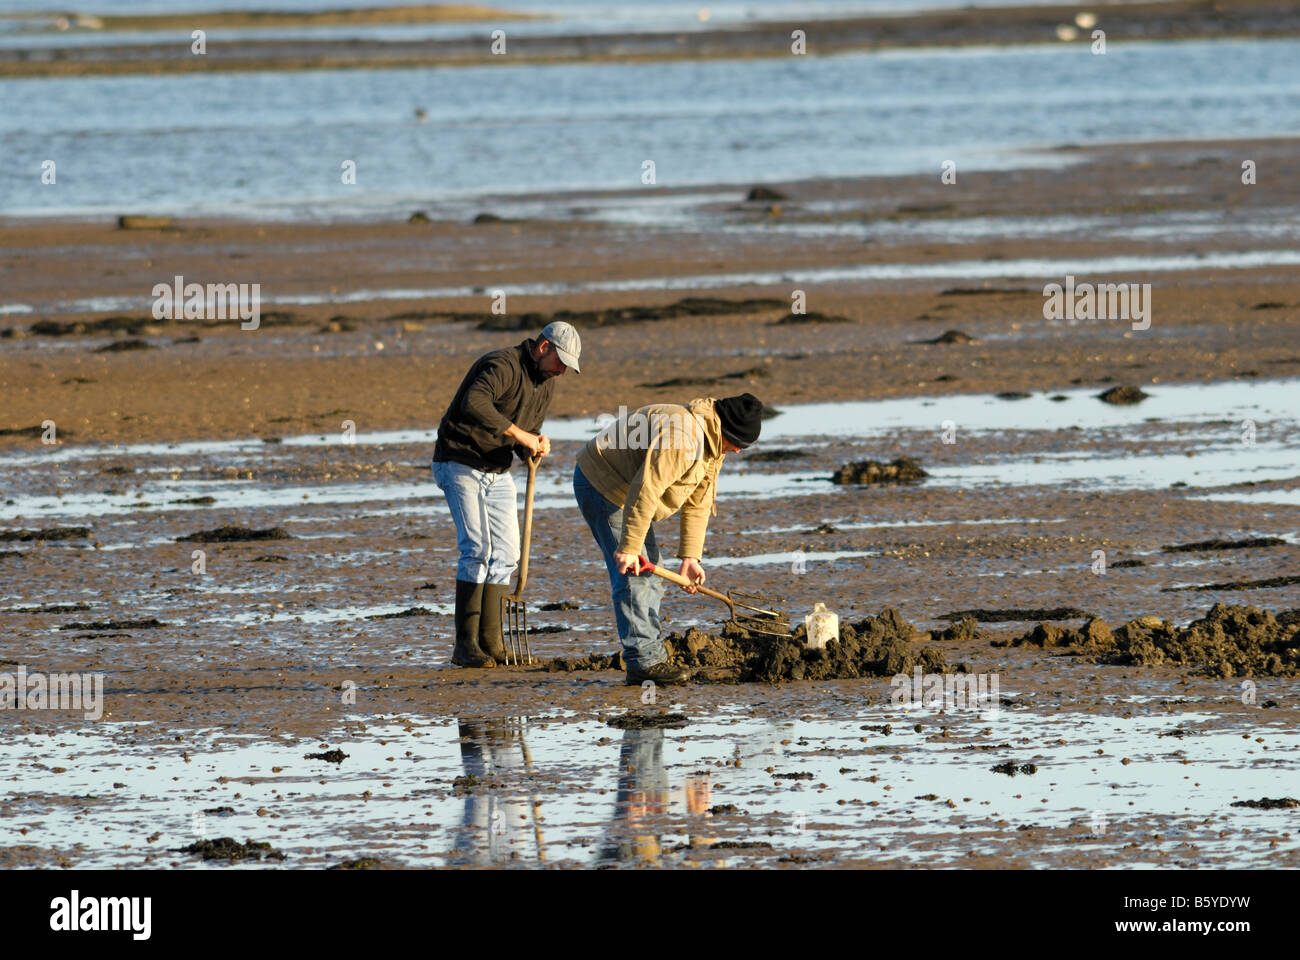 Fischer auf der Suche nach Köder, Tay-Mündung, Tayport, Fife, Schottland Stockfoto